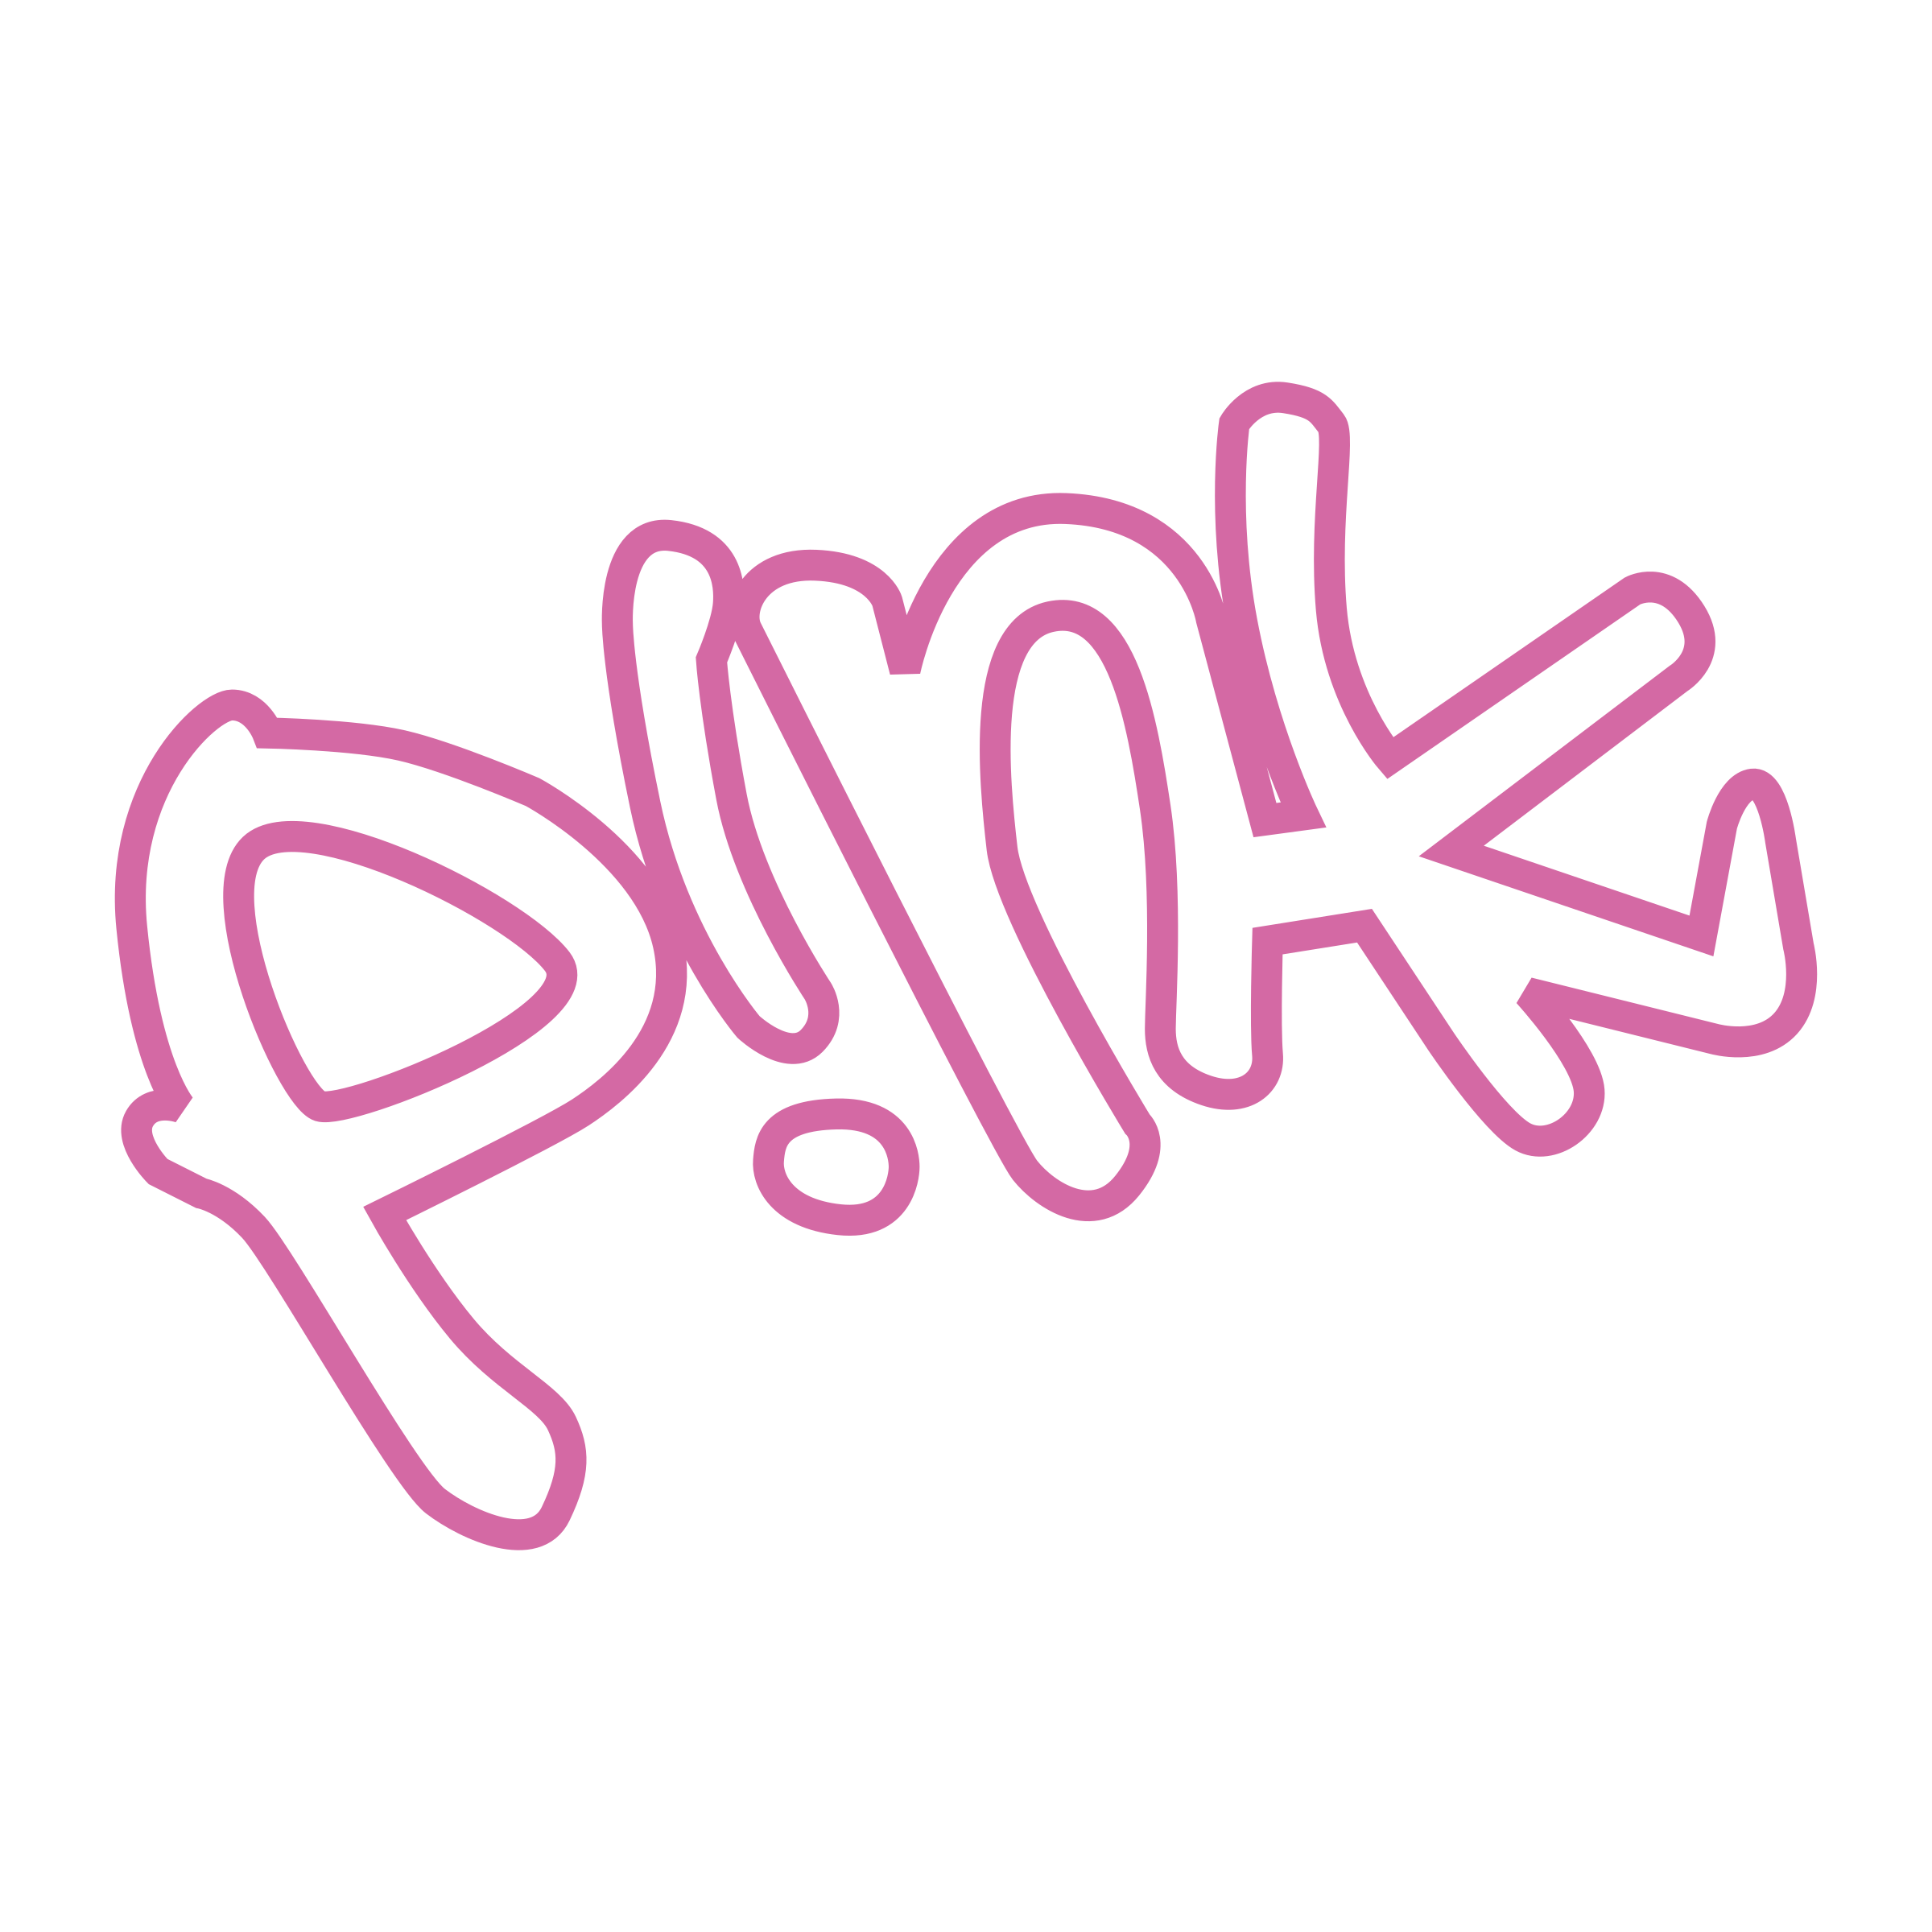 Pink Singer Download Transparent PNG Image